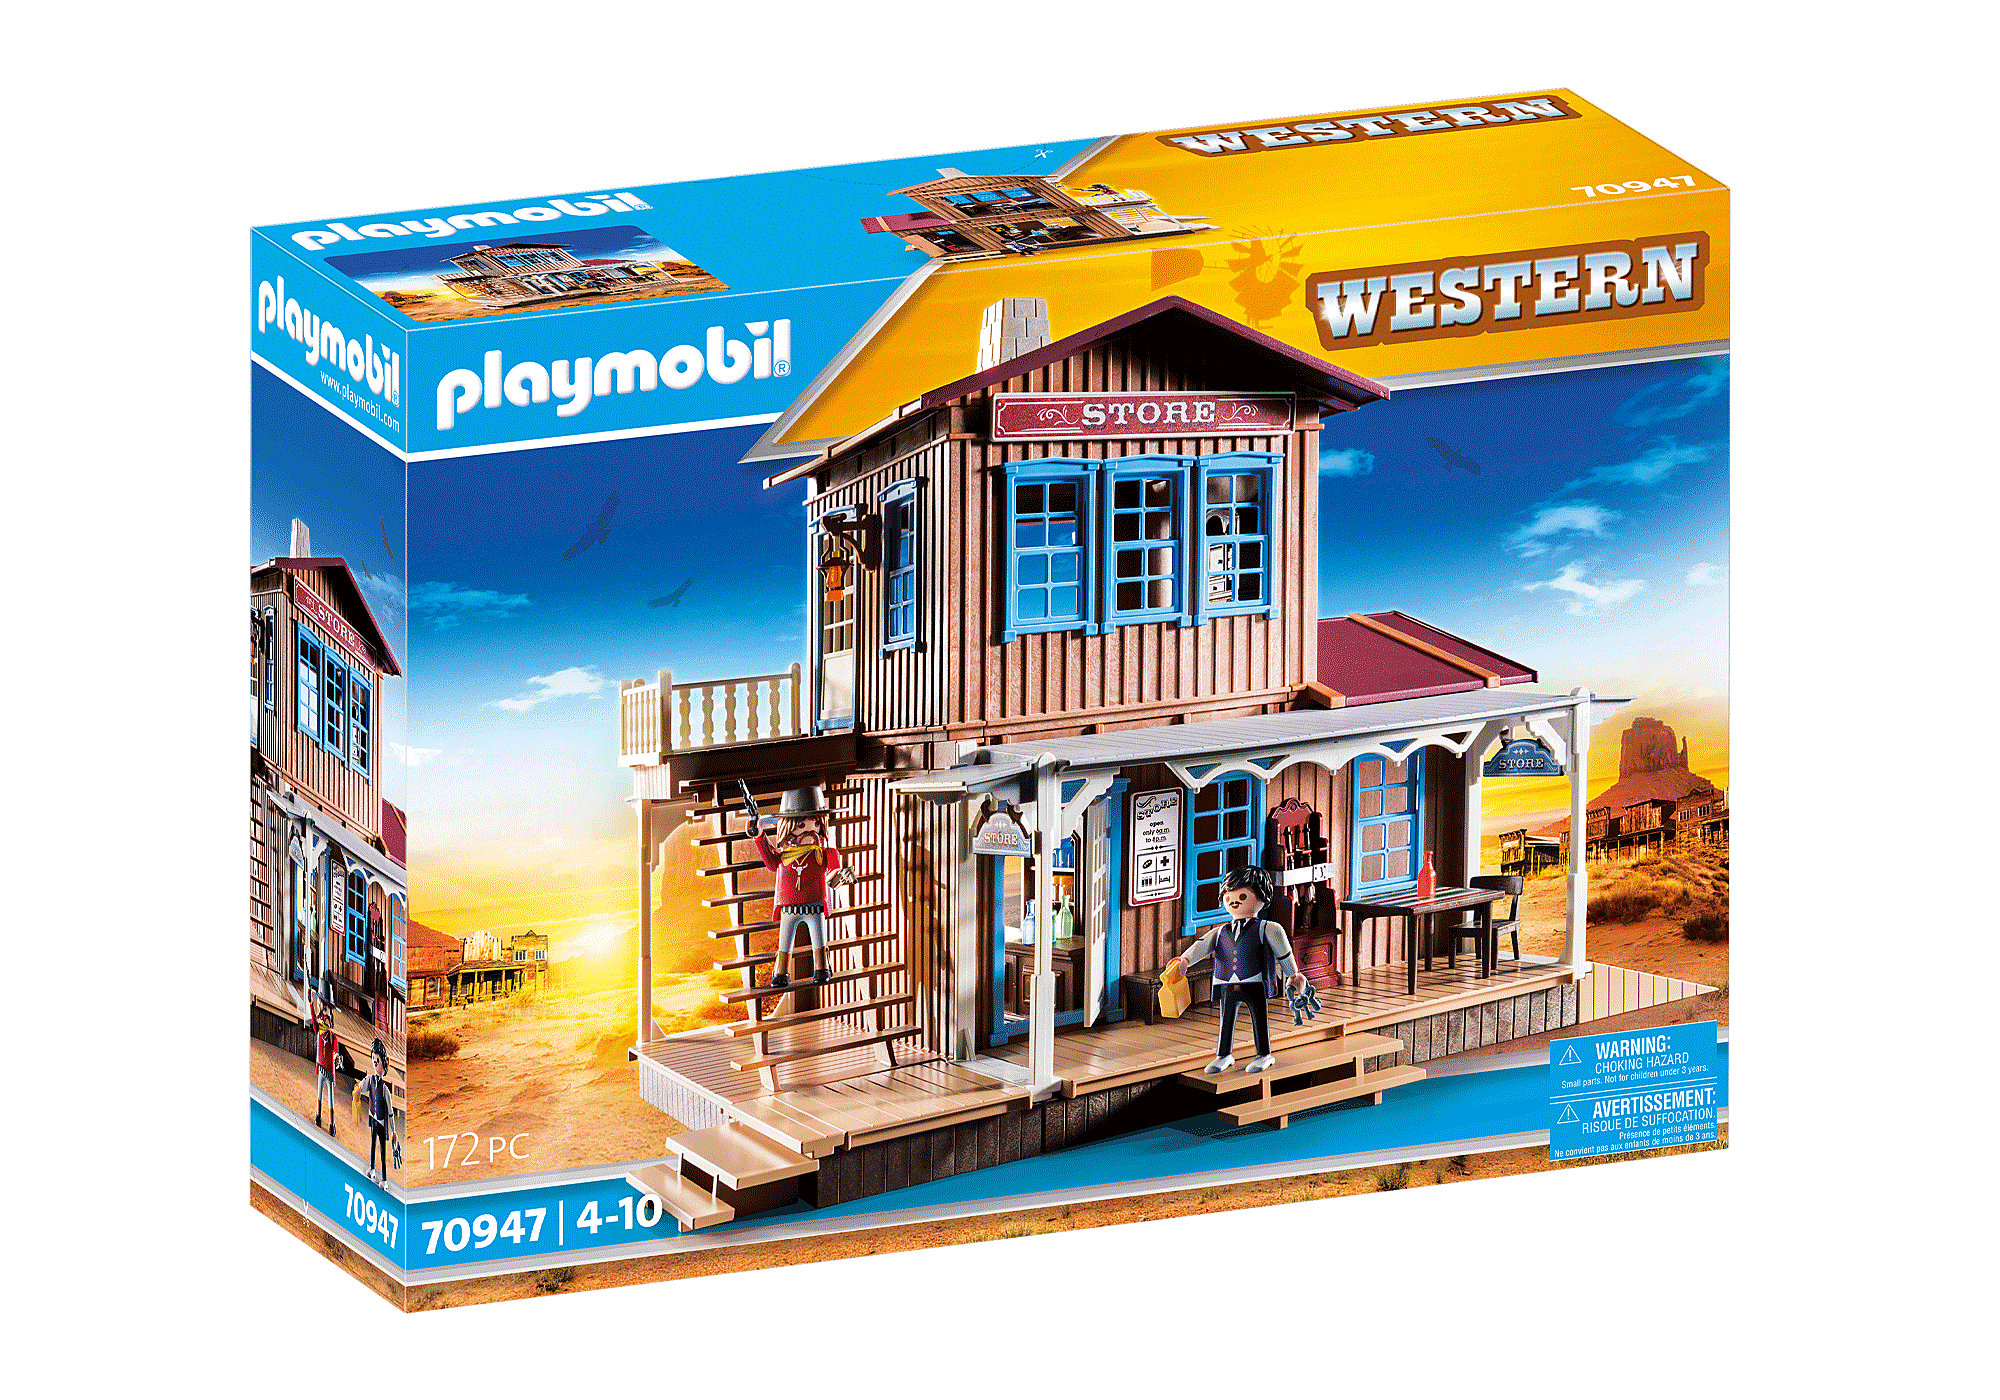 formule halsband Knipoog Western winkel met woning - 70947 | PLAYMOBIL®